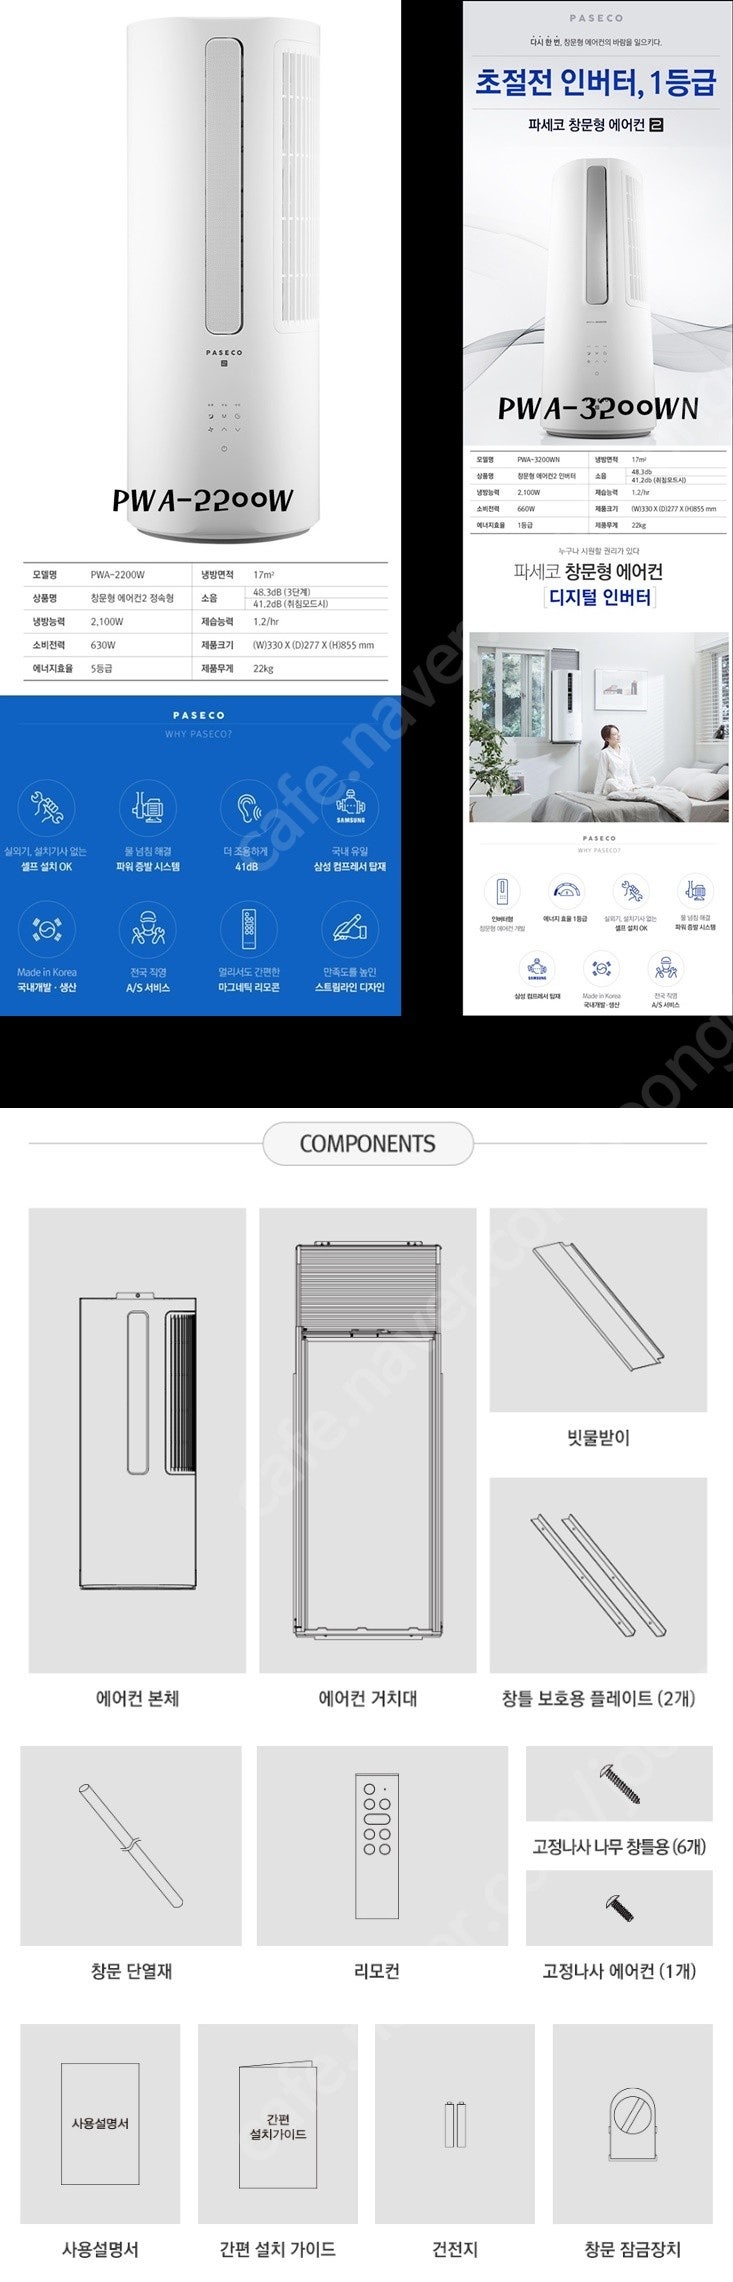 [판매]창문형에어컨 새상품 OIO-8678-7O97